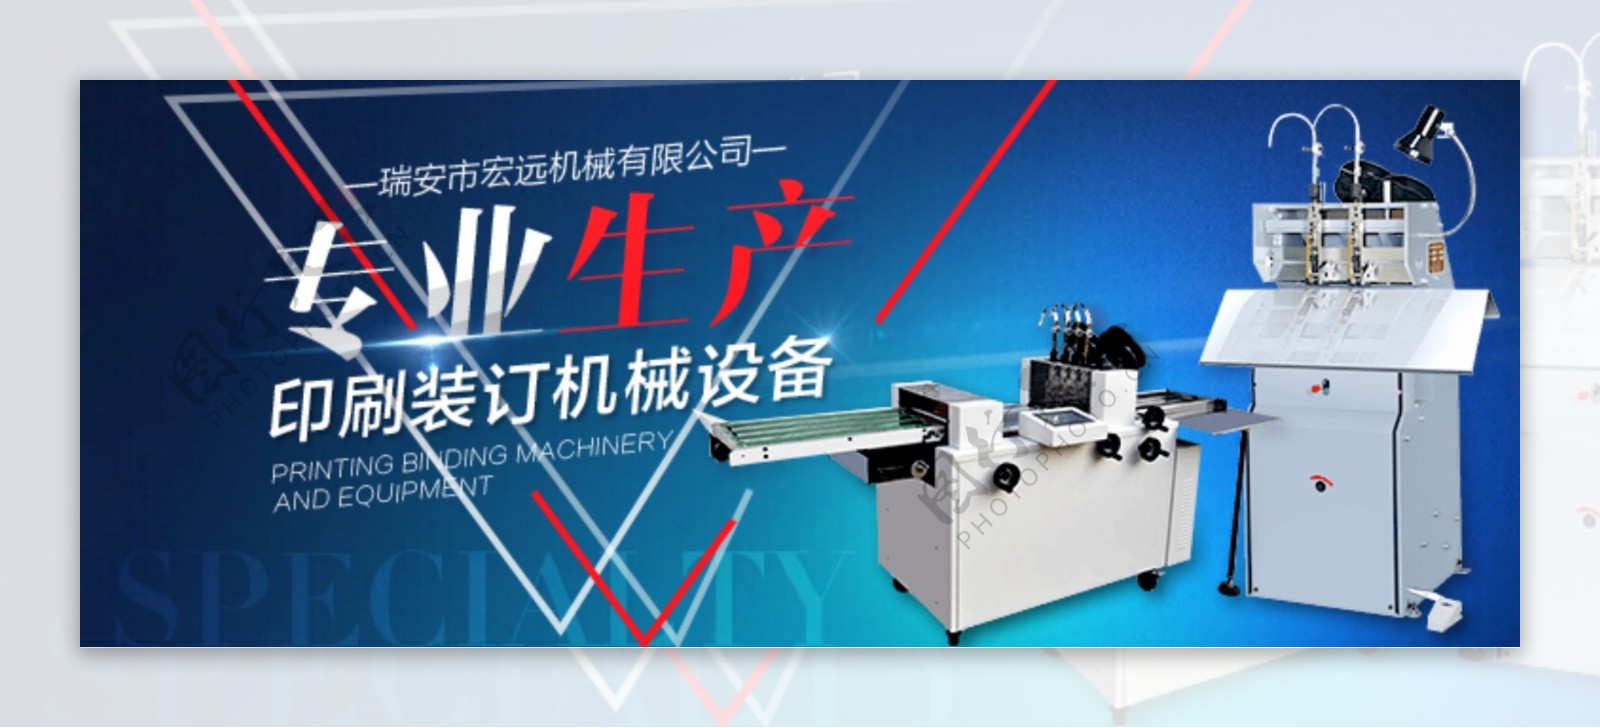 专业生产印刷装订机械设备淘宝海报psd